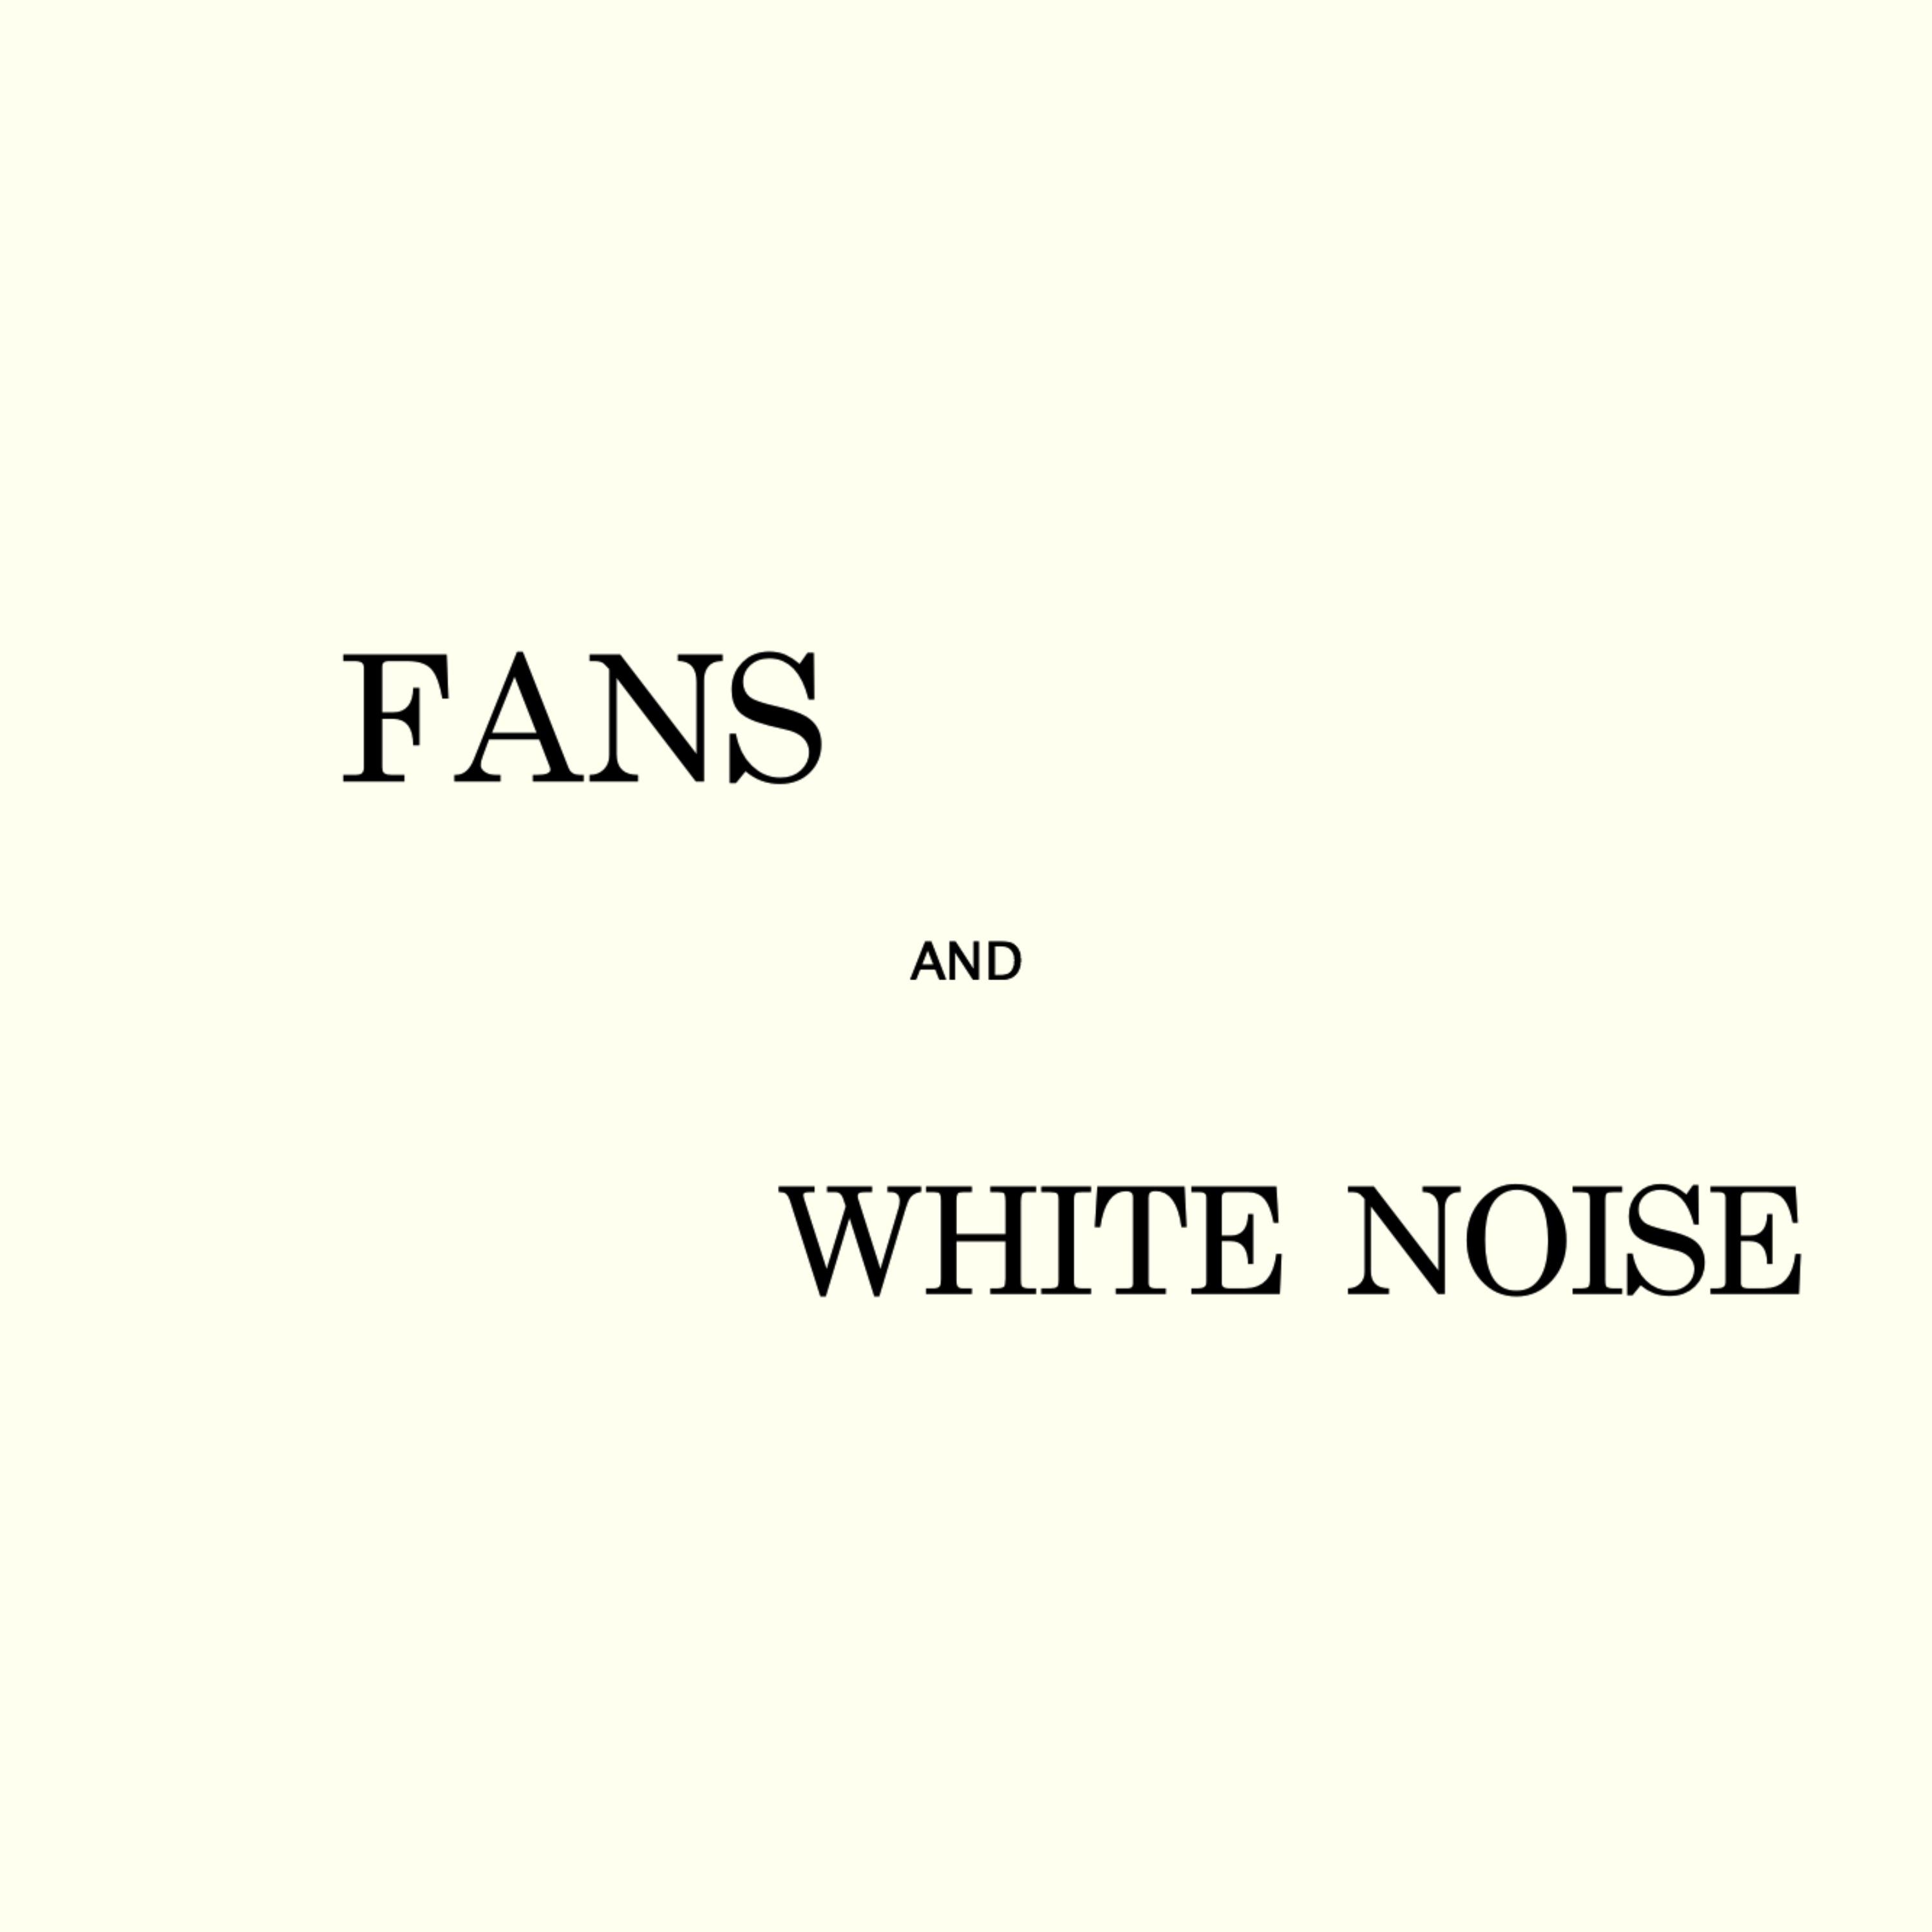 White Noise Electric Fan